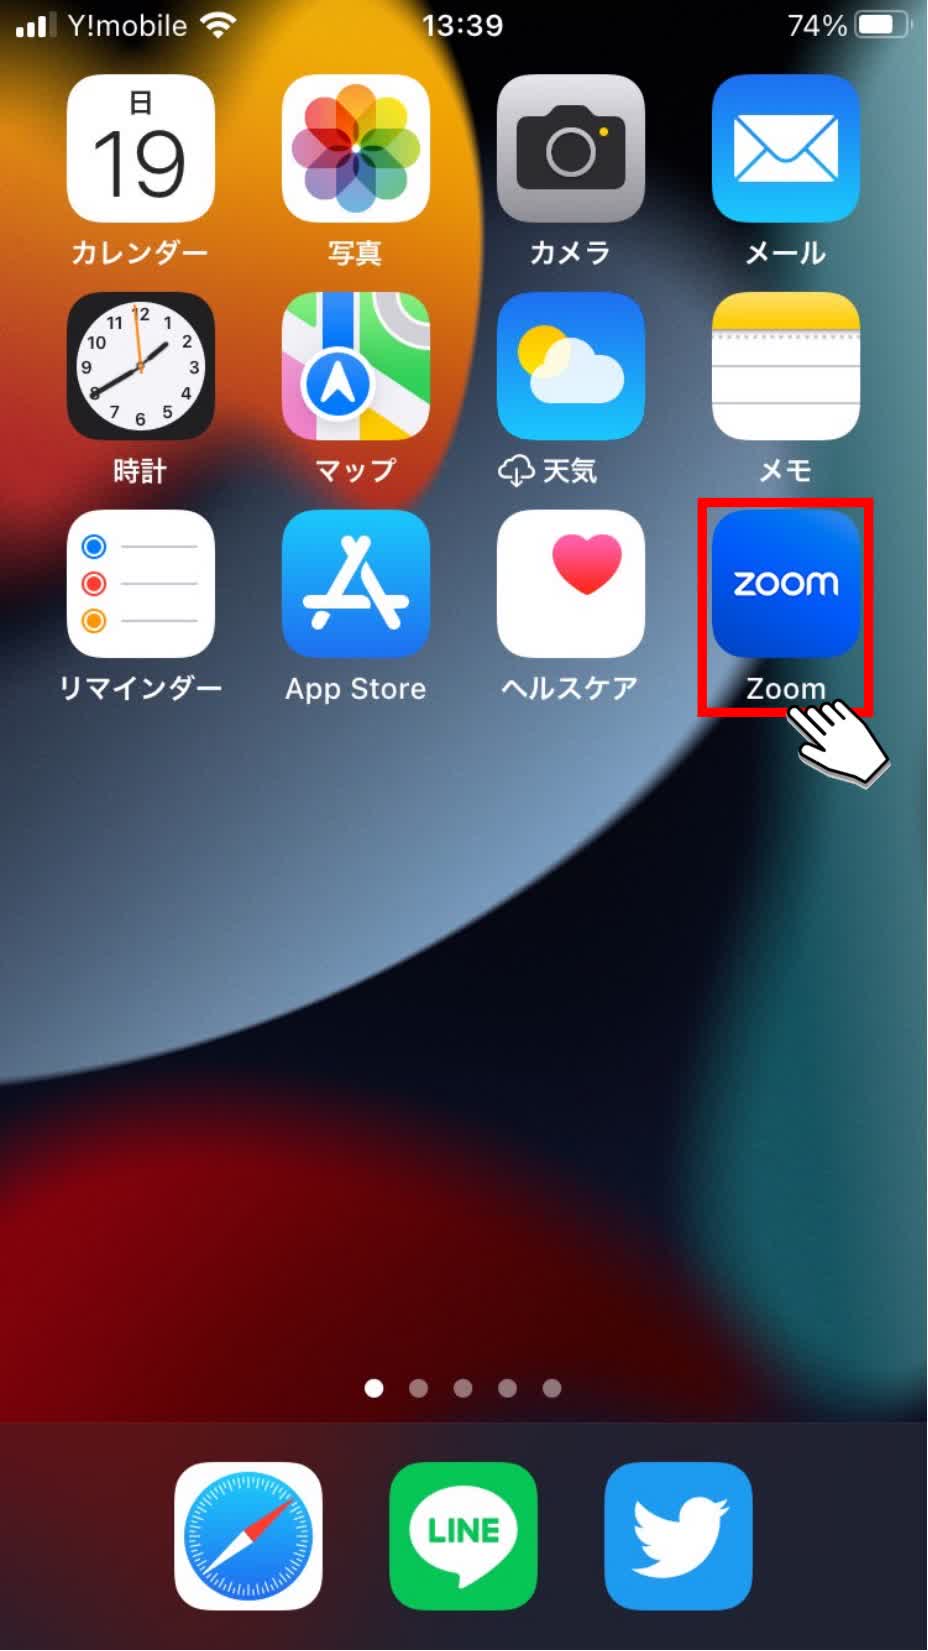 Zoomアイコンが表示